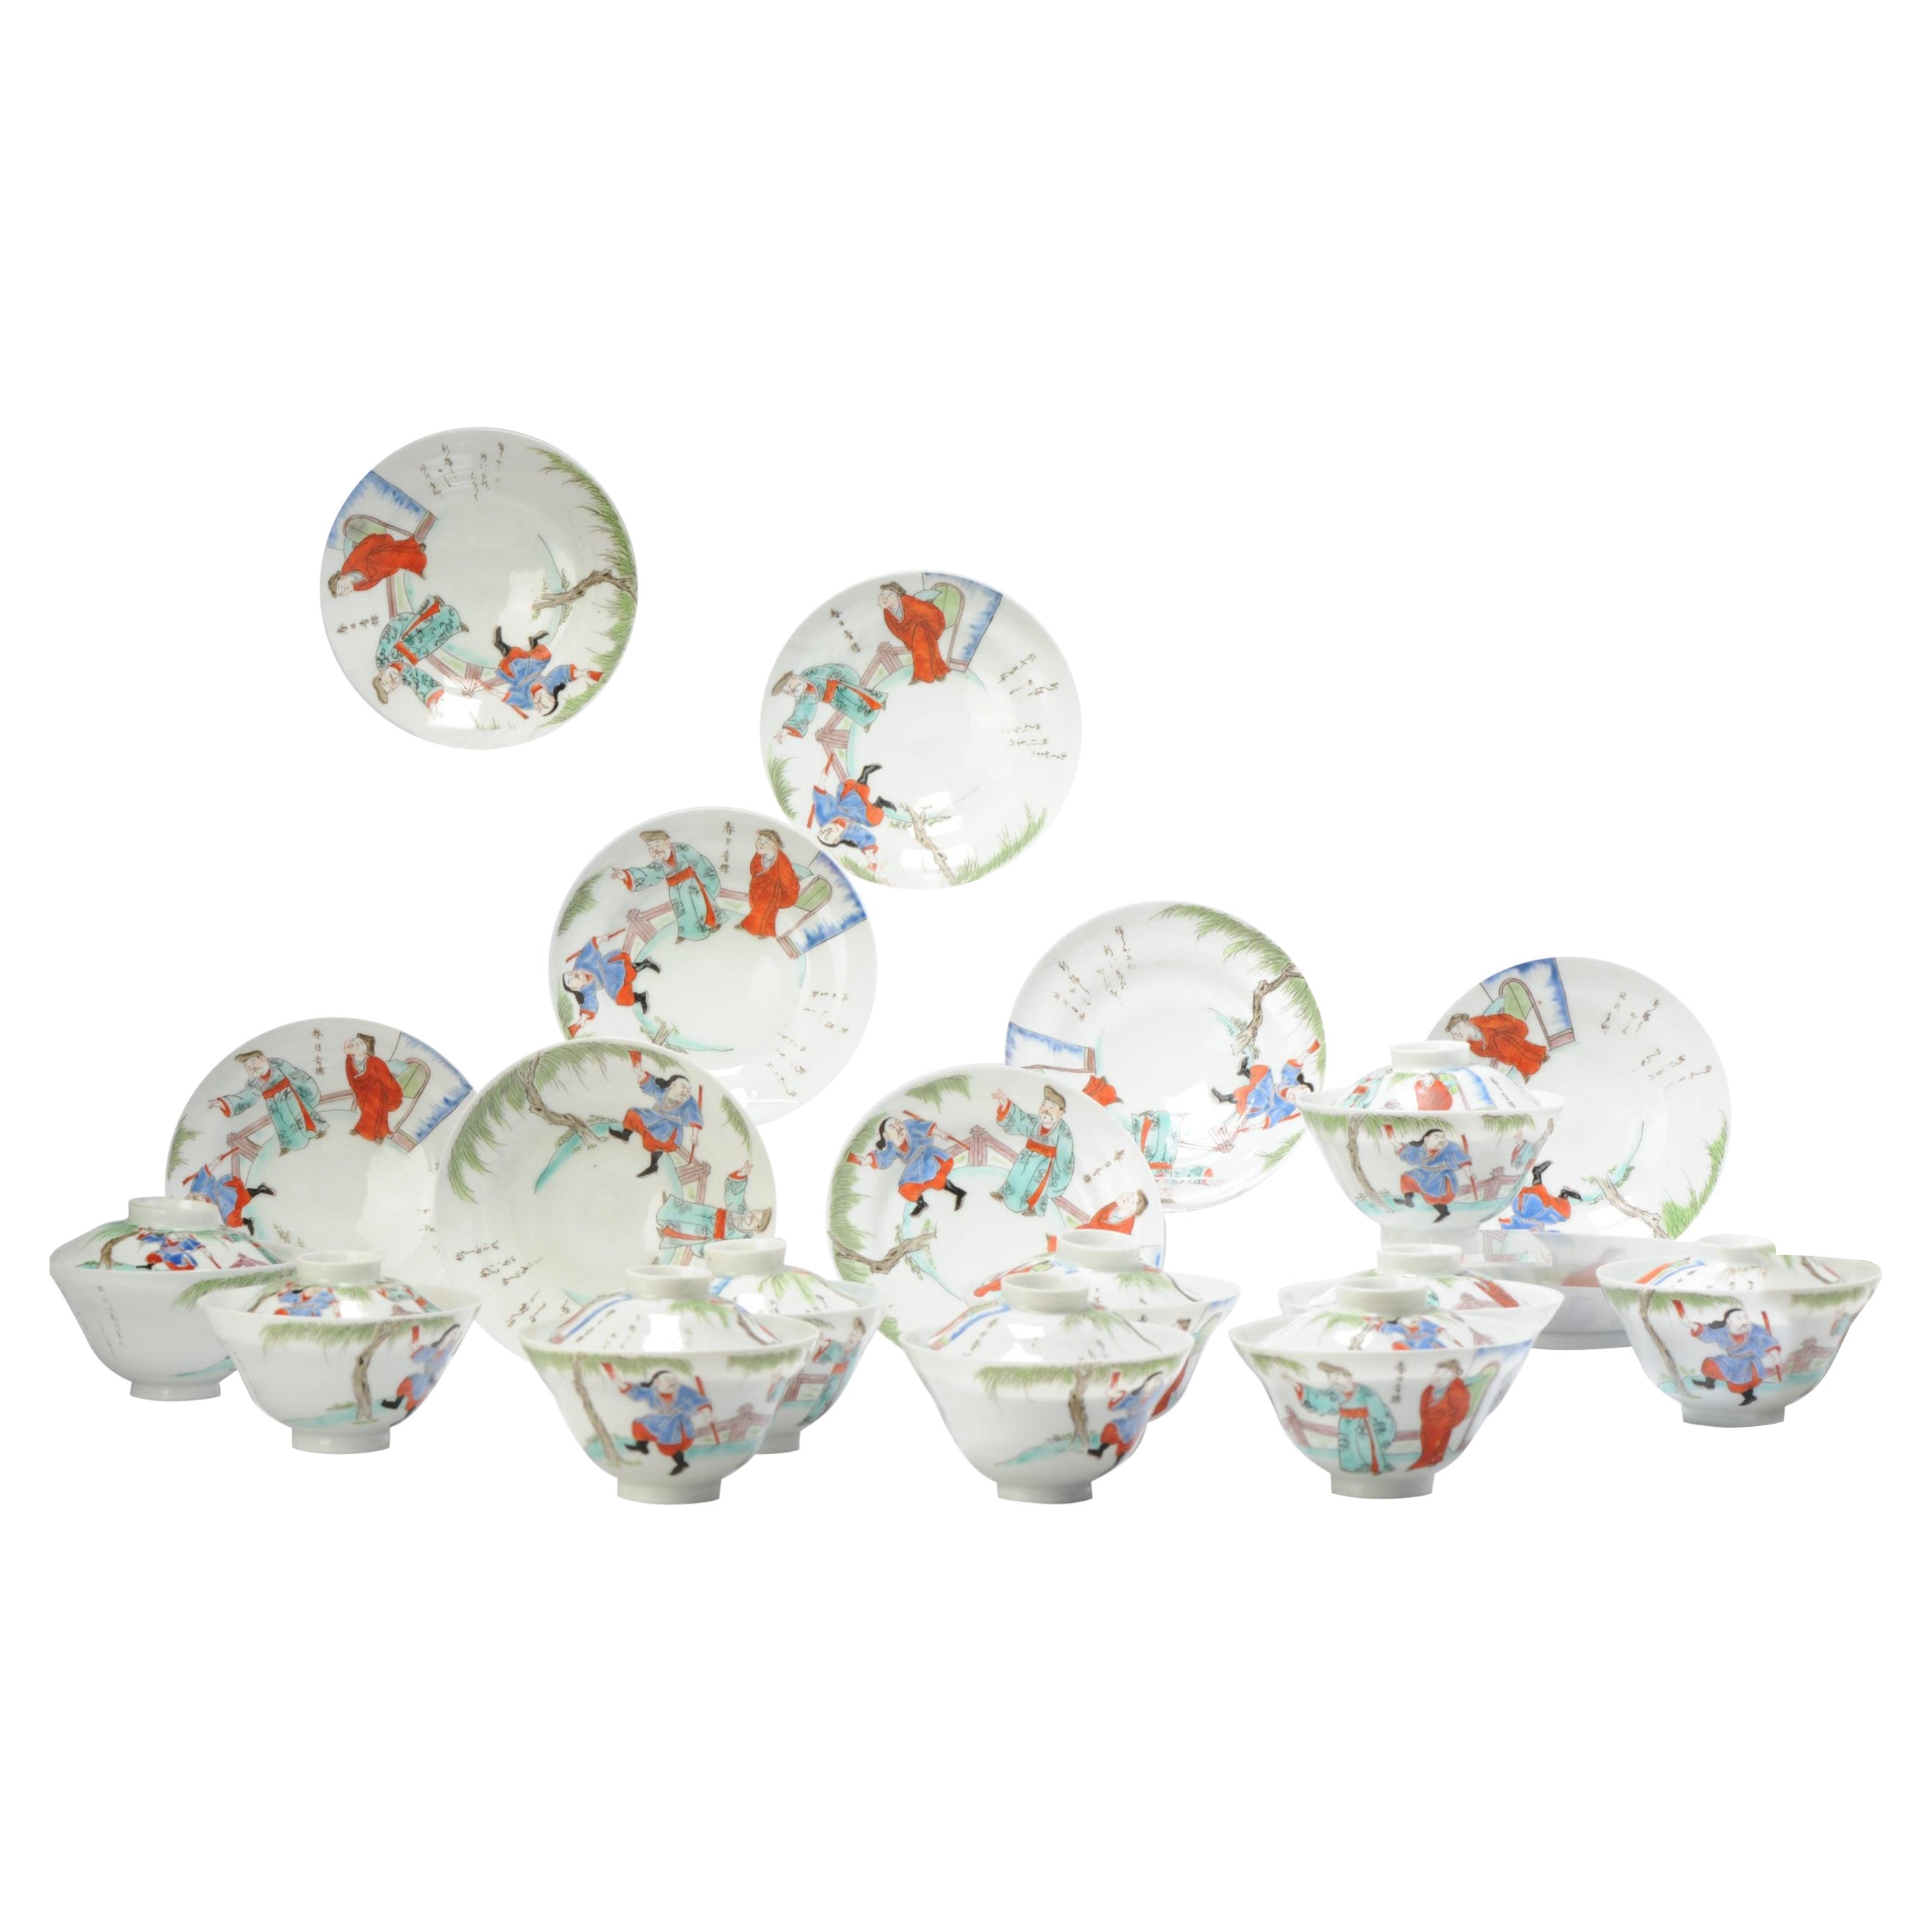 Ensemble de 10 bols à thé Chawan en porcelaine coquille d'œuf de la période Meiji